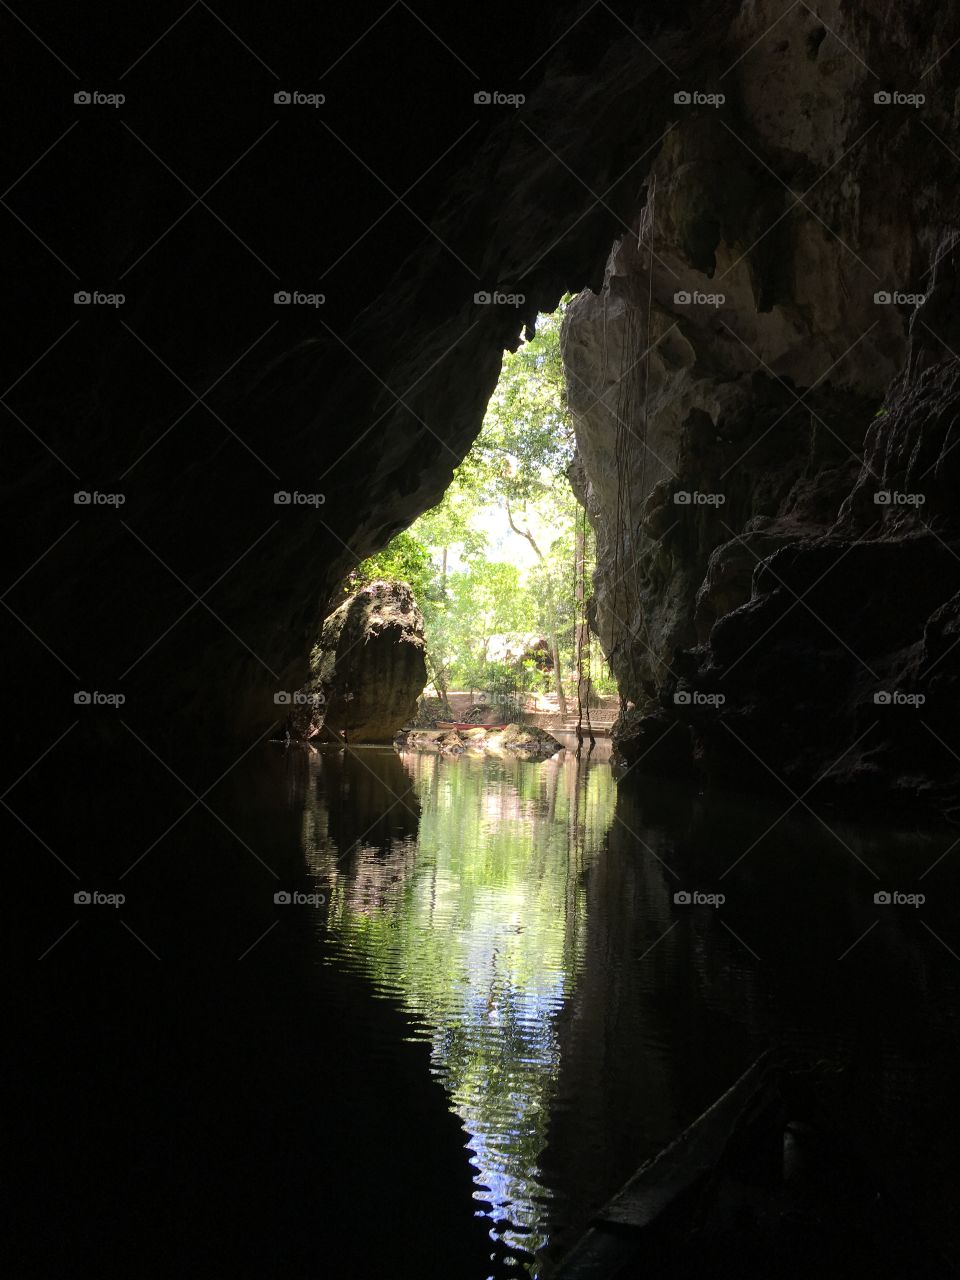 River cave